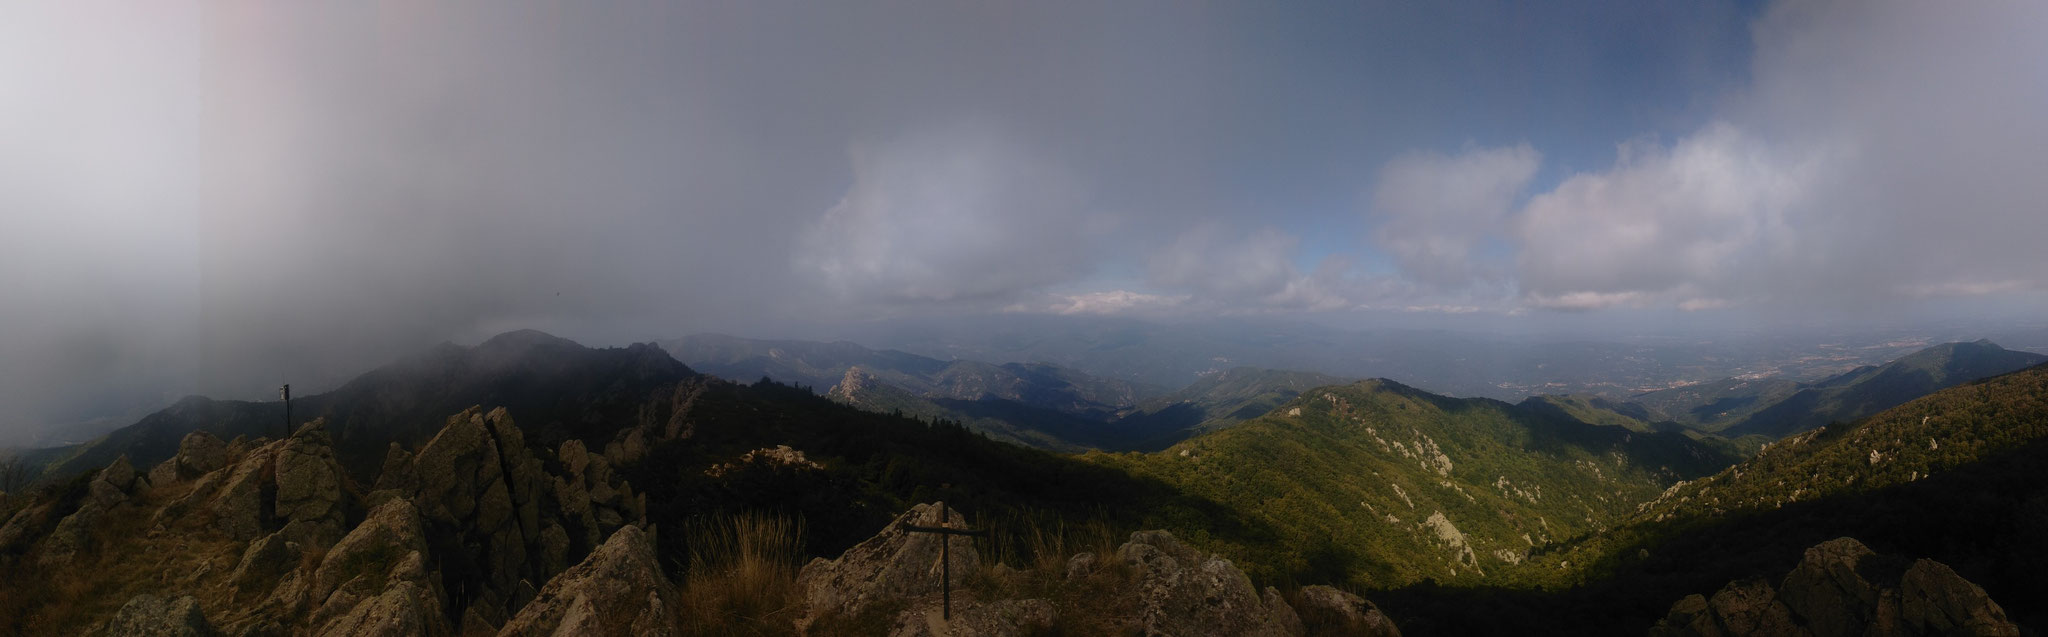 Arrivée au Roc (1450 m) avec les nuages !